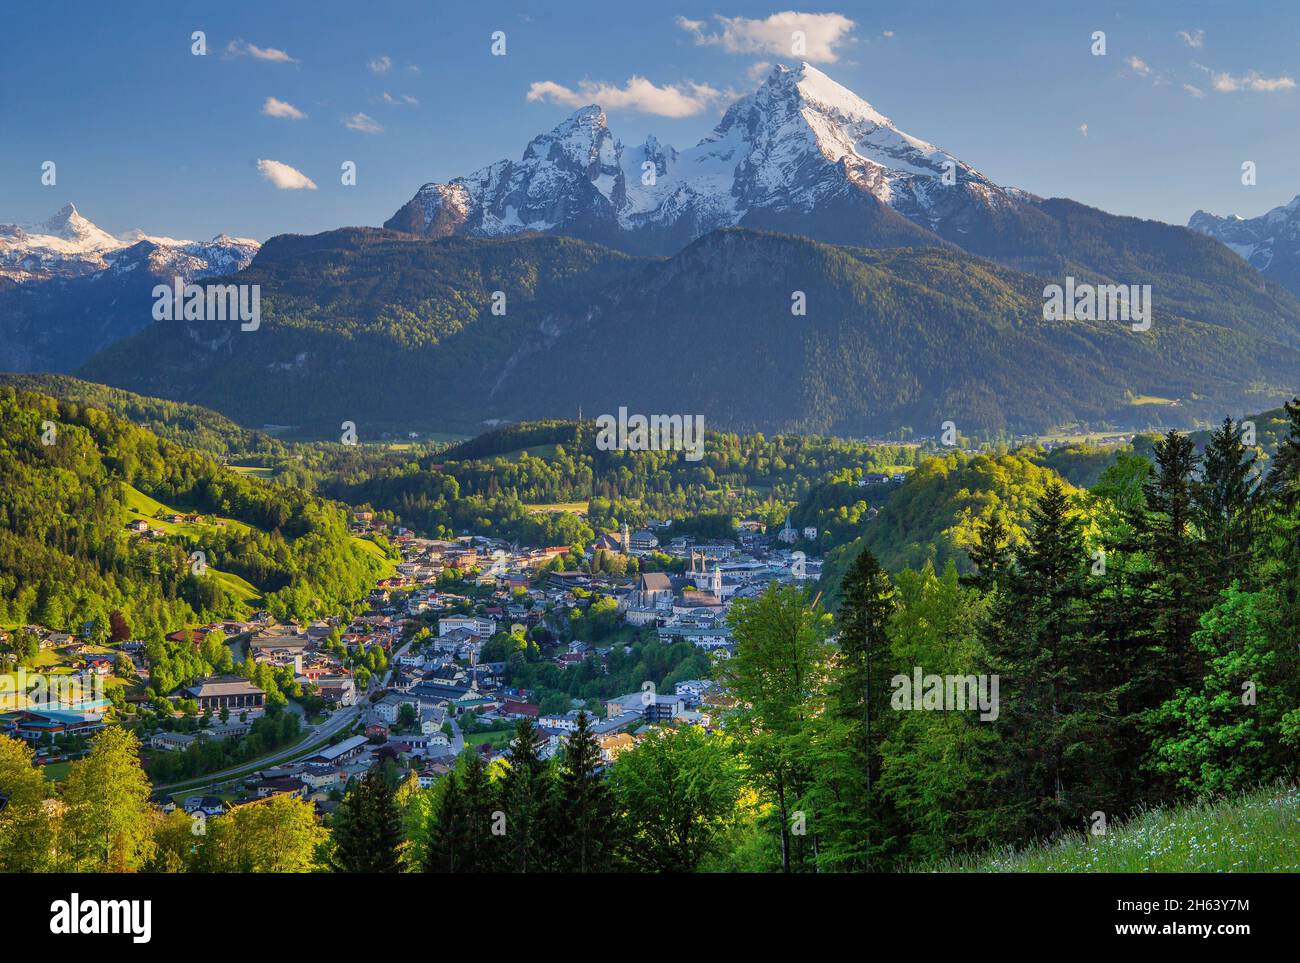 vista del valle, ort y watzmann 2713m en el sol de la tarde, berchtesgaden, berchtesgaden alpes, berchtesgaden tierra, alta baviera, baviera, alemania Foto de stock